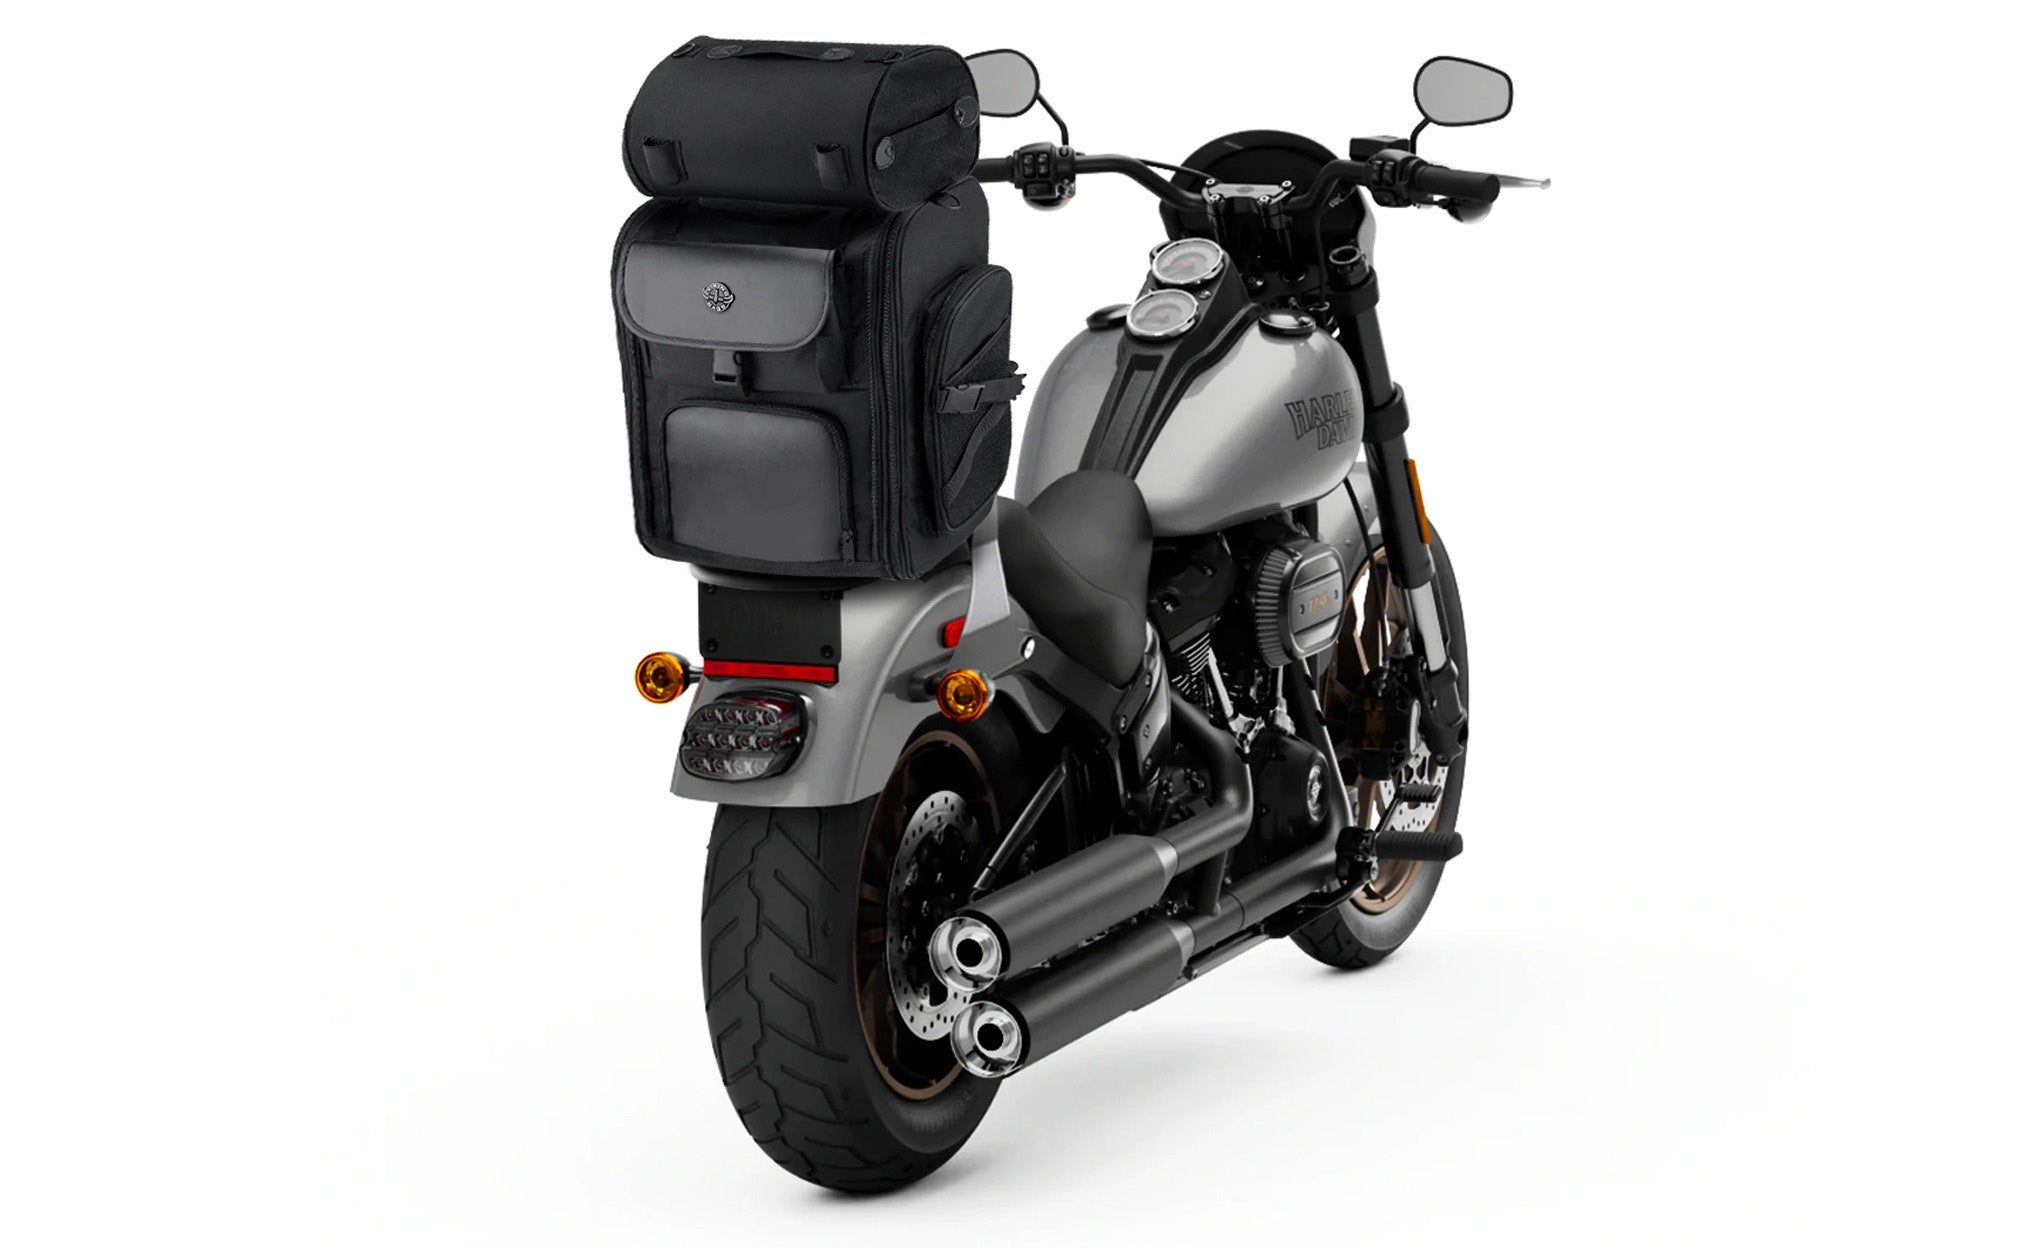 Viking Dwarf Medium Kawasaki Motorcycle Sissy Bar Bag Bag on Bike View @expand